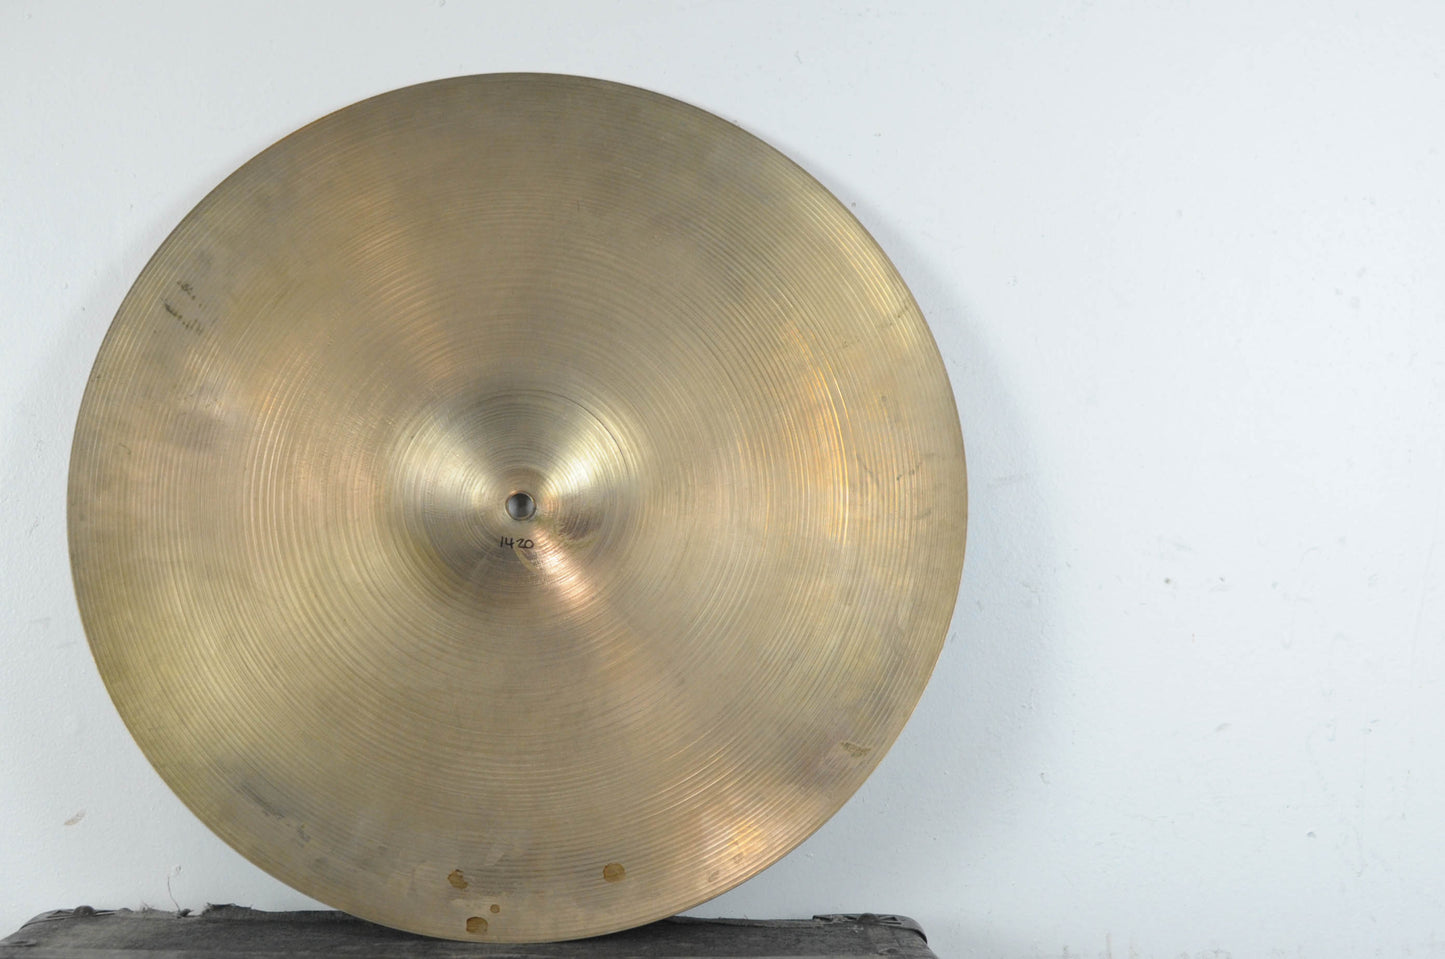 1960s Zildjian A 18" Crash Cymbal 1420g